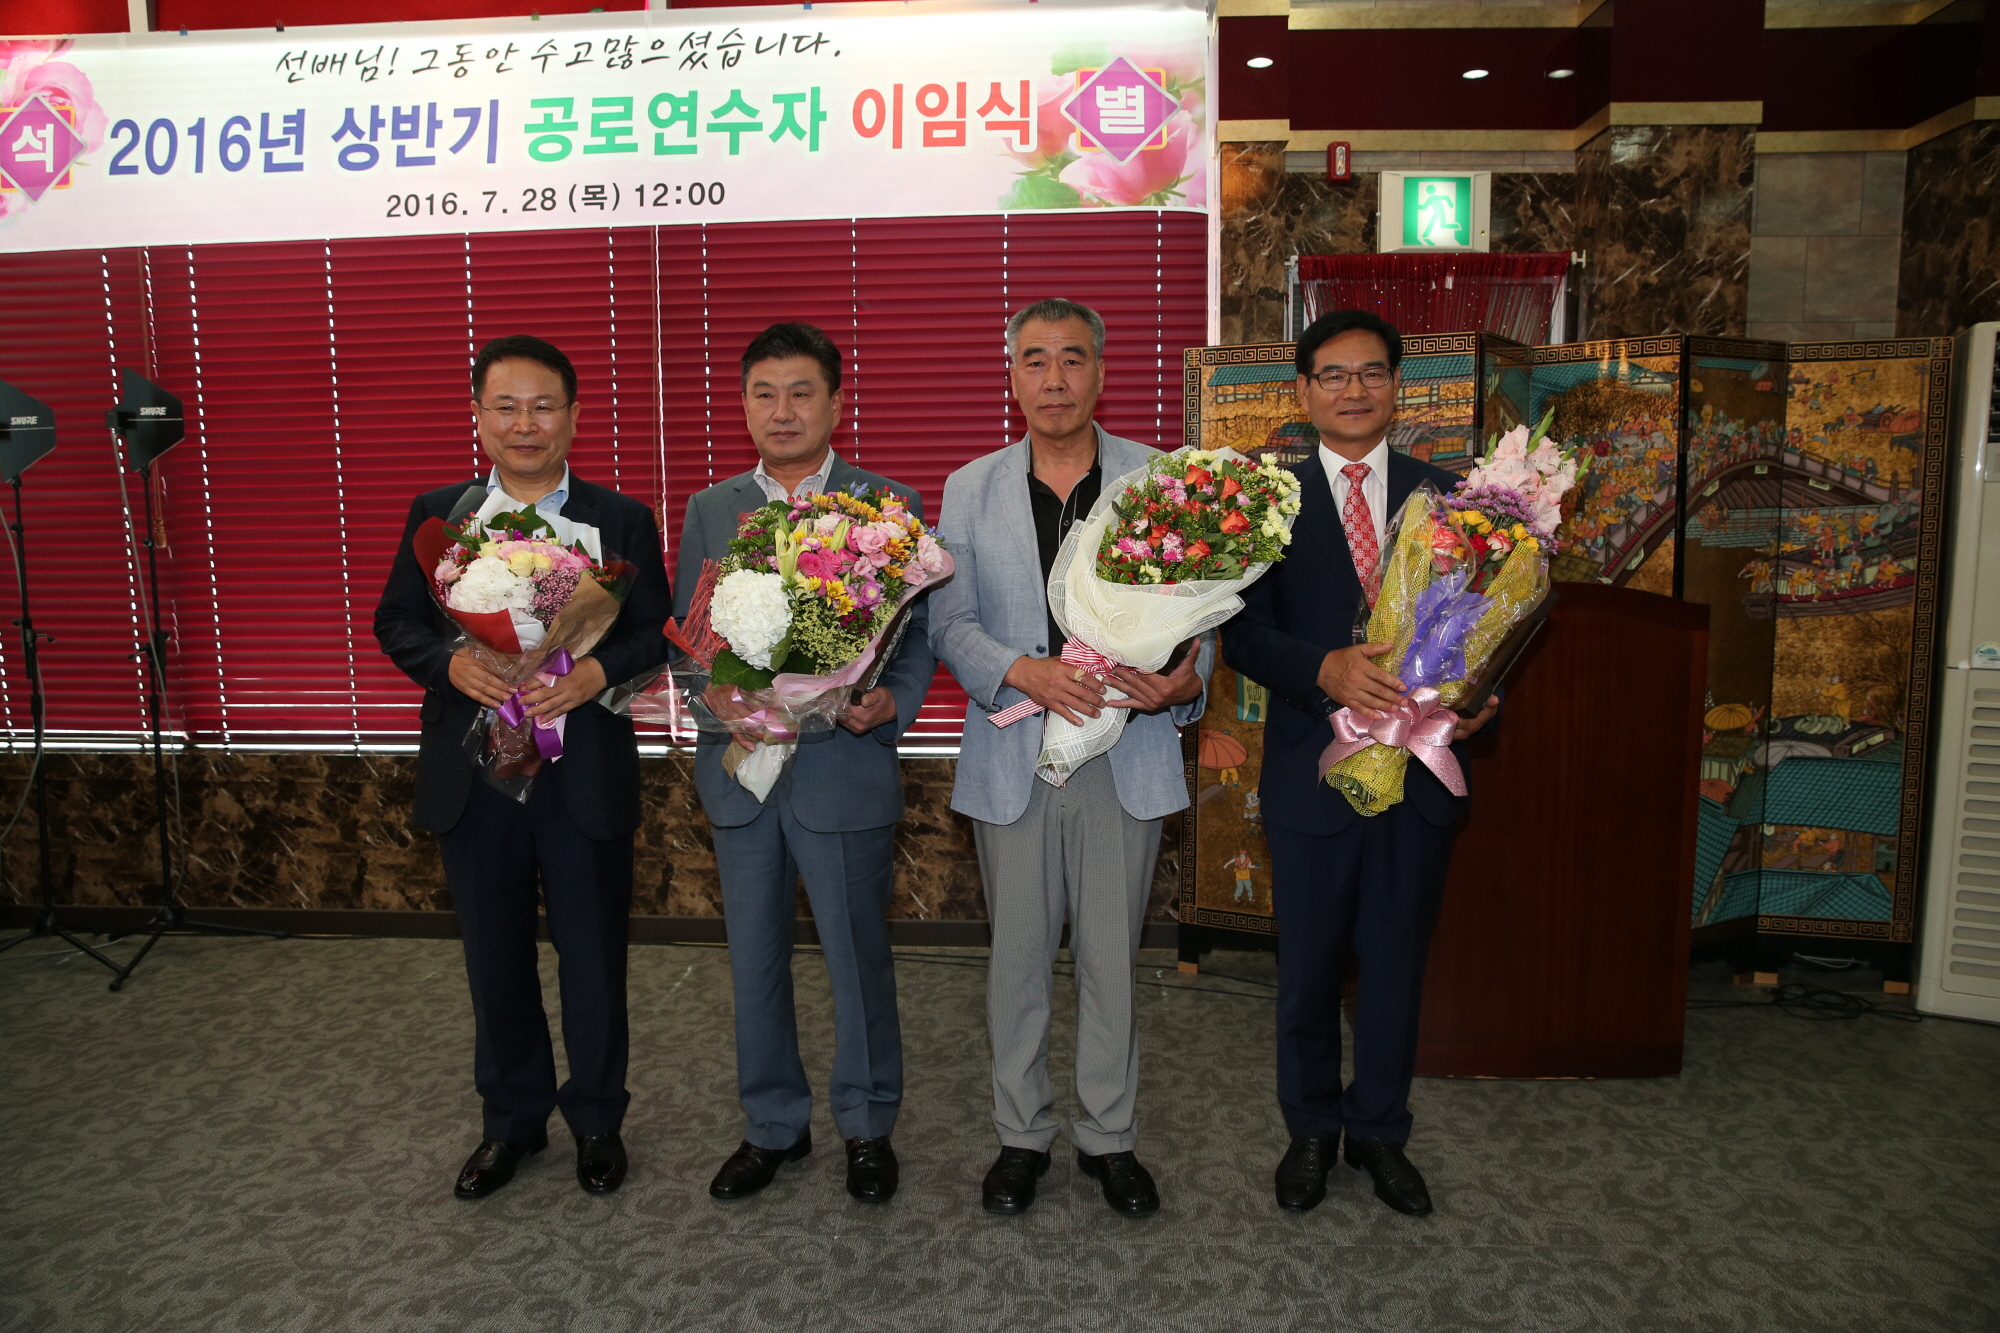 7월28일 2016 상반기 공로연수자 이임식 개최